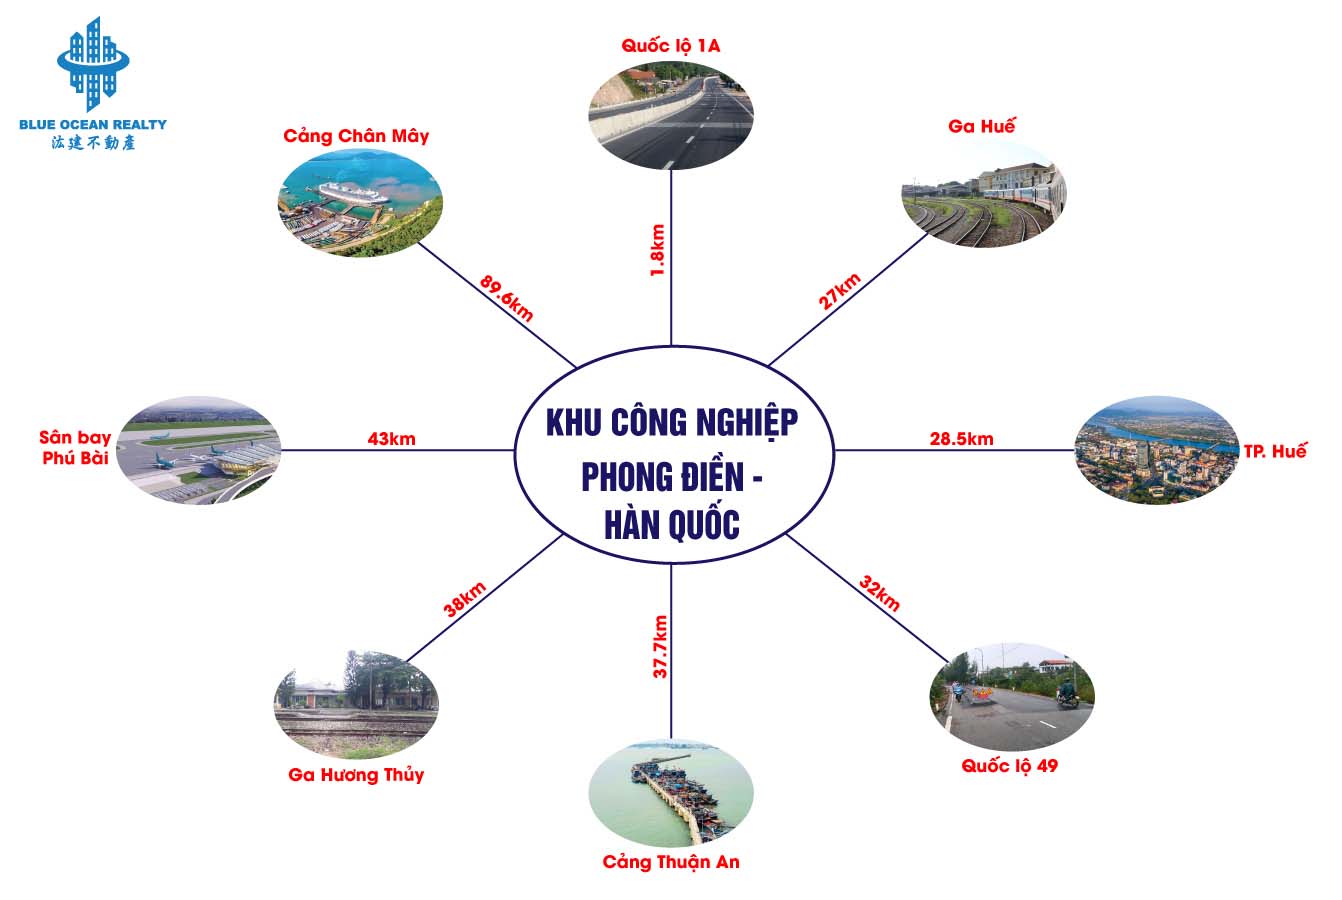 Khu công nghiệp Phong Điền - Hàn Quốc tỉnh Thừa Thiên Huế